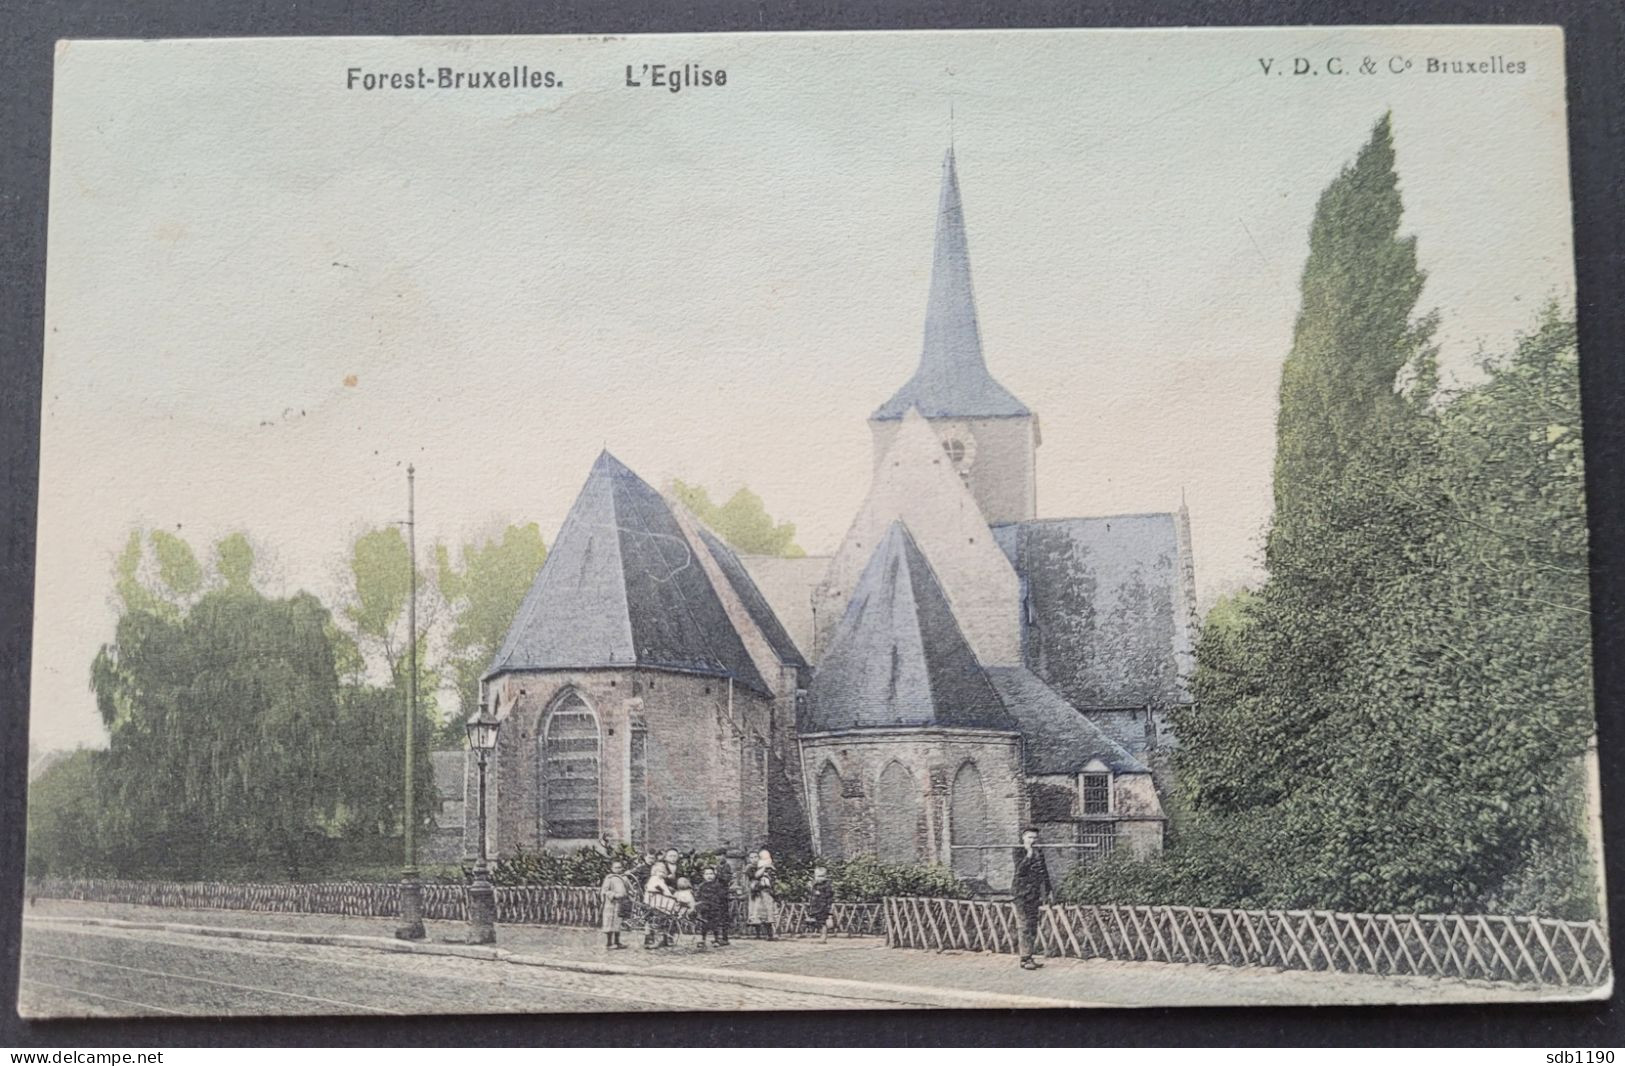 Forest-Bruxelles - L'Eglise (V.D.C. & Co Bruxelles), Colorisée & Circulée 1911 - Vorst - Forest